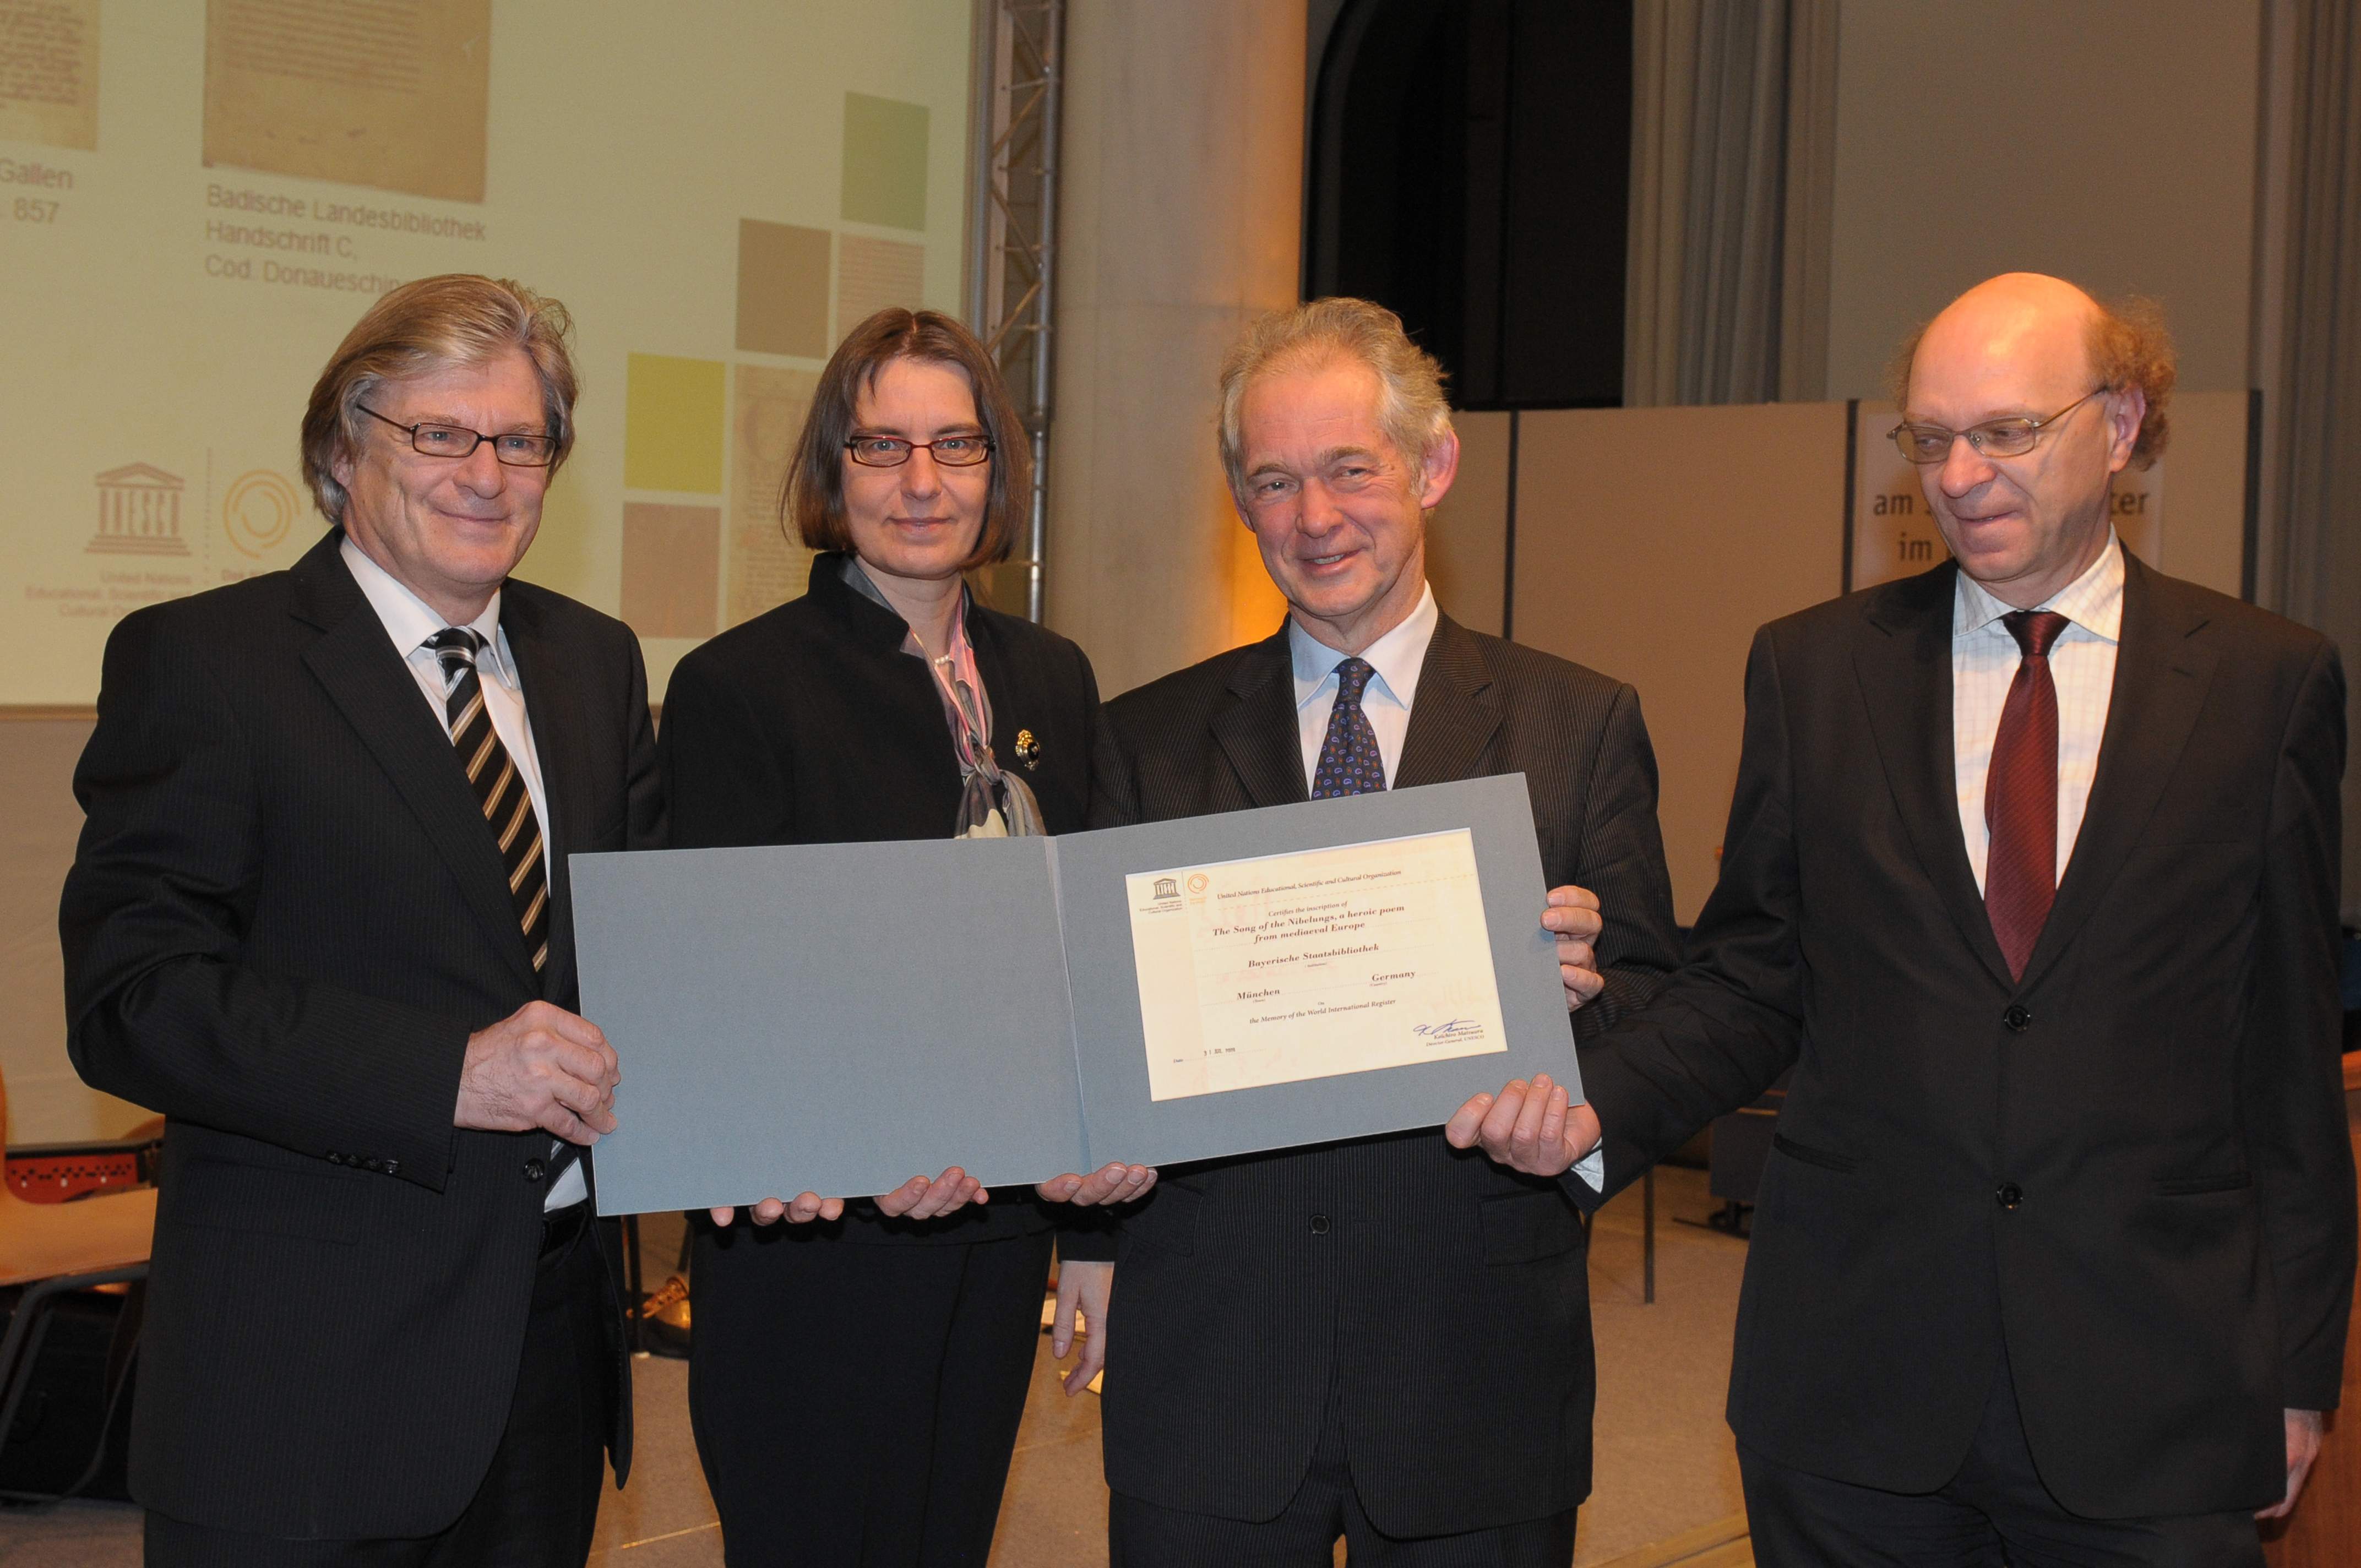 Zu sehen sind die Vertreter der Bayerischen Staatsbibliothek, der Stiftsbibliothek St. Gallen und der Badischen Landesbibliothek bei der Verleihung der Urkunde zum Weltdokumentenerbe-Status des Nibelungenliedes im Januar 2010 in München.